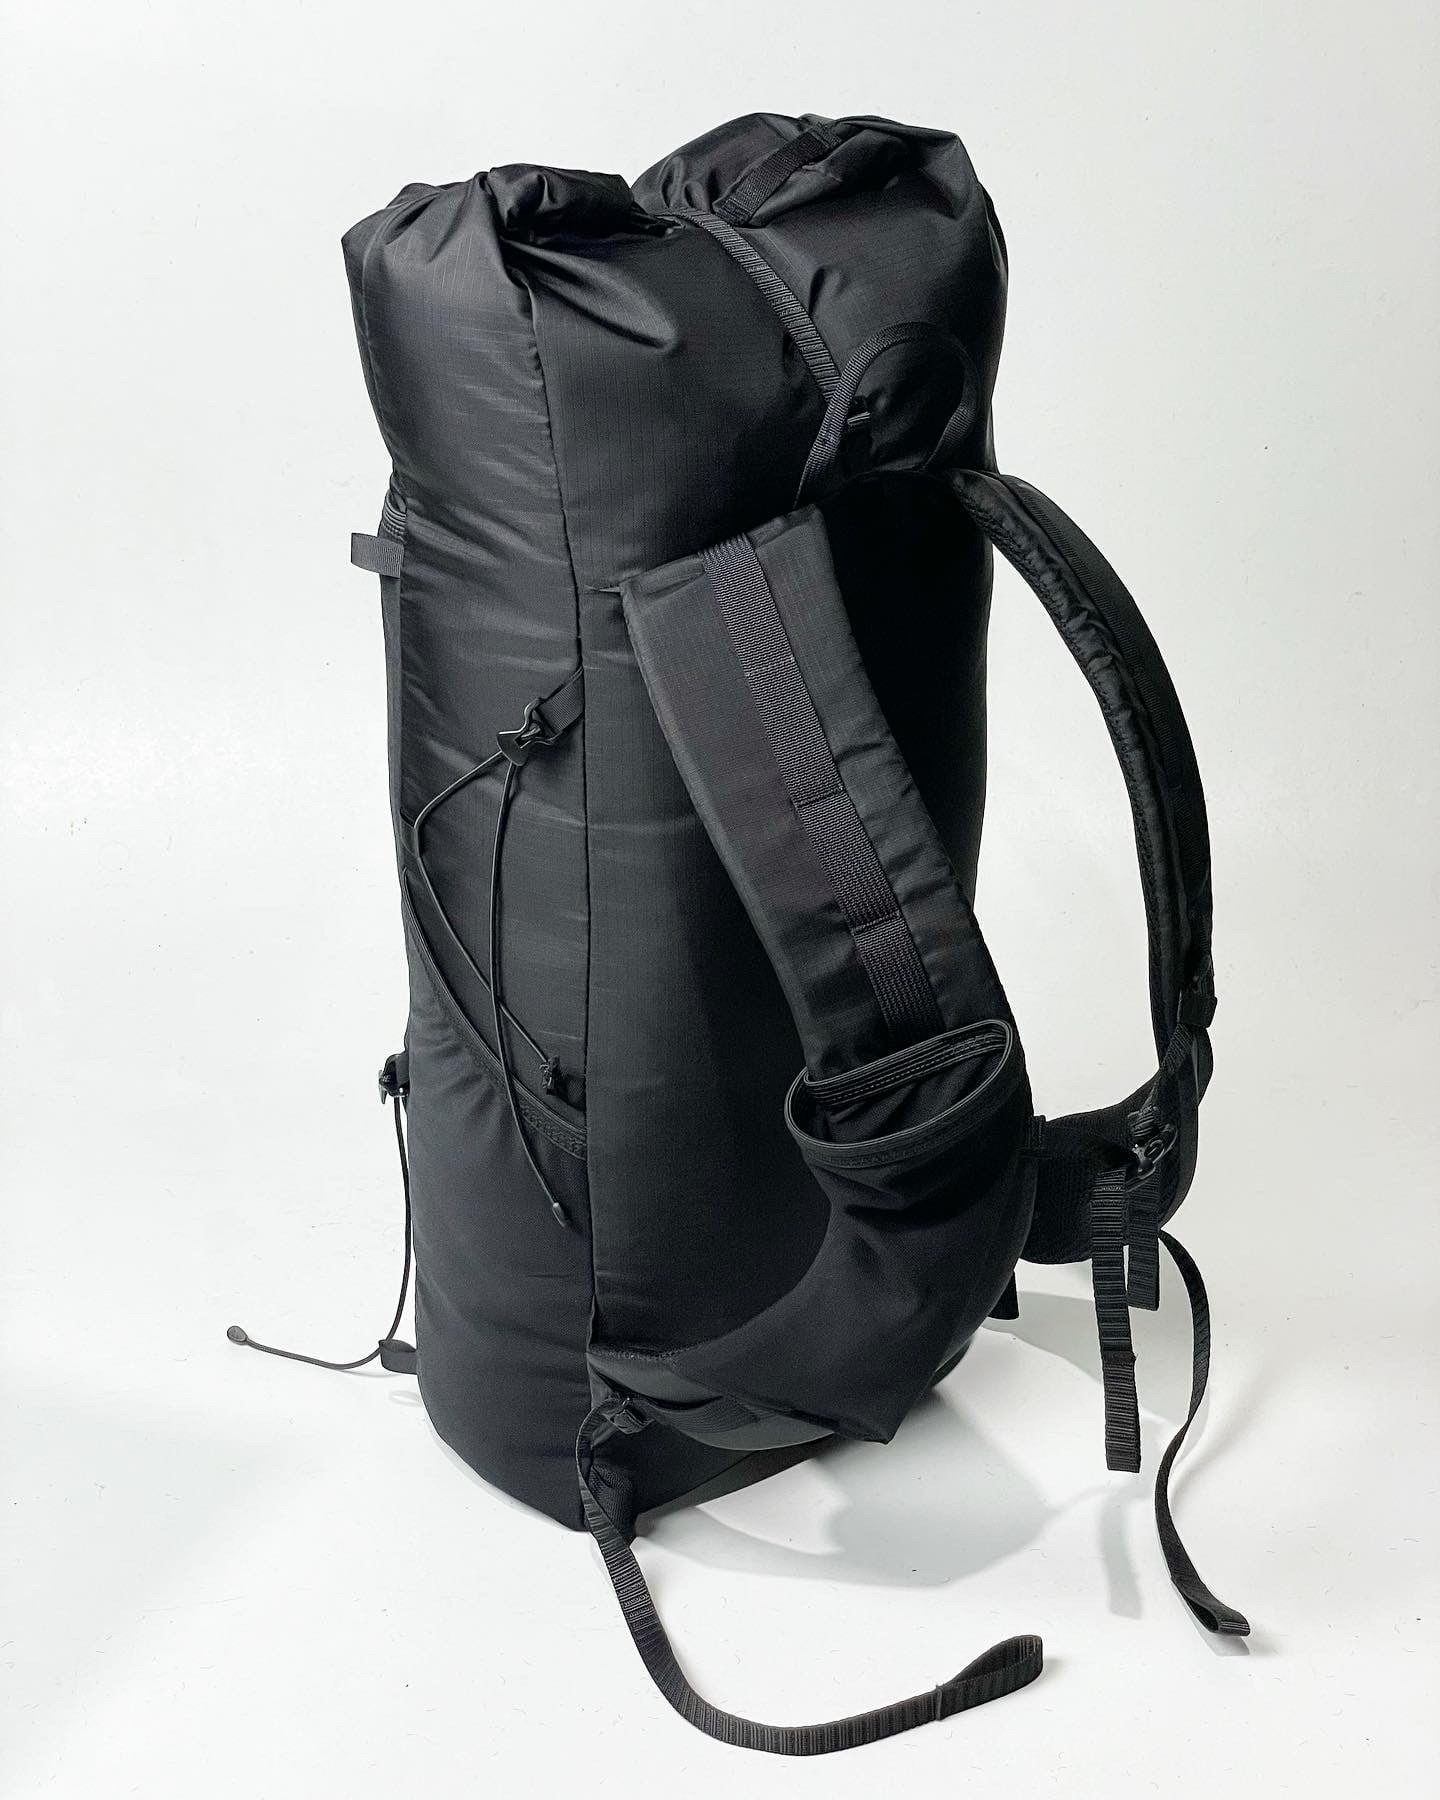 Multi-Day 20L Backpack » Frameless Daypack Ultralight –